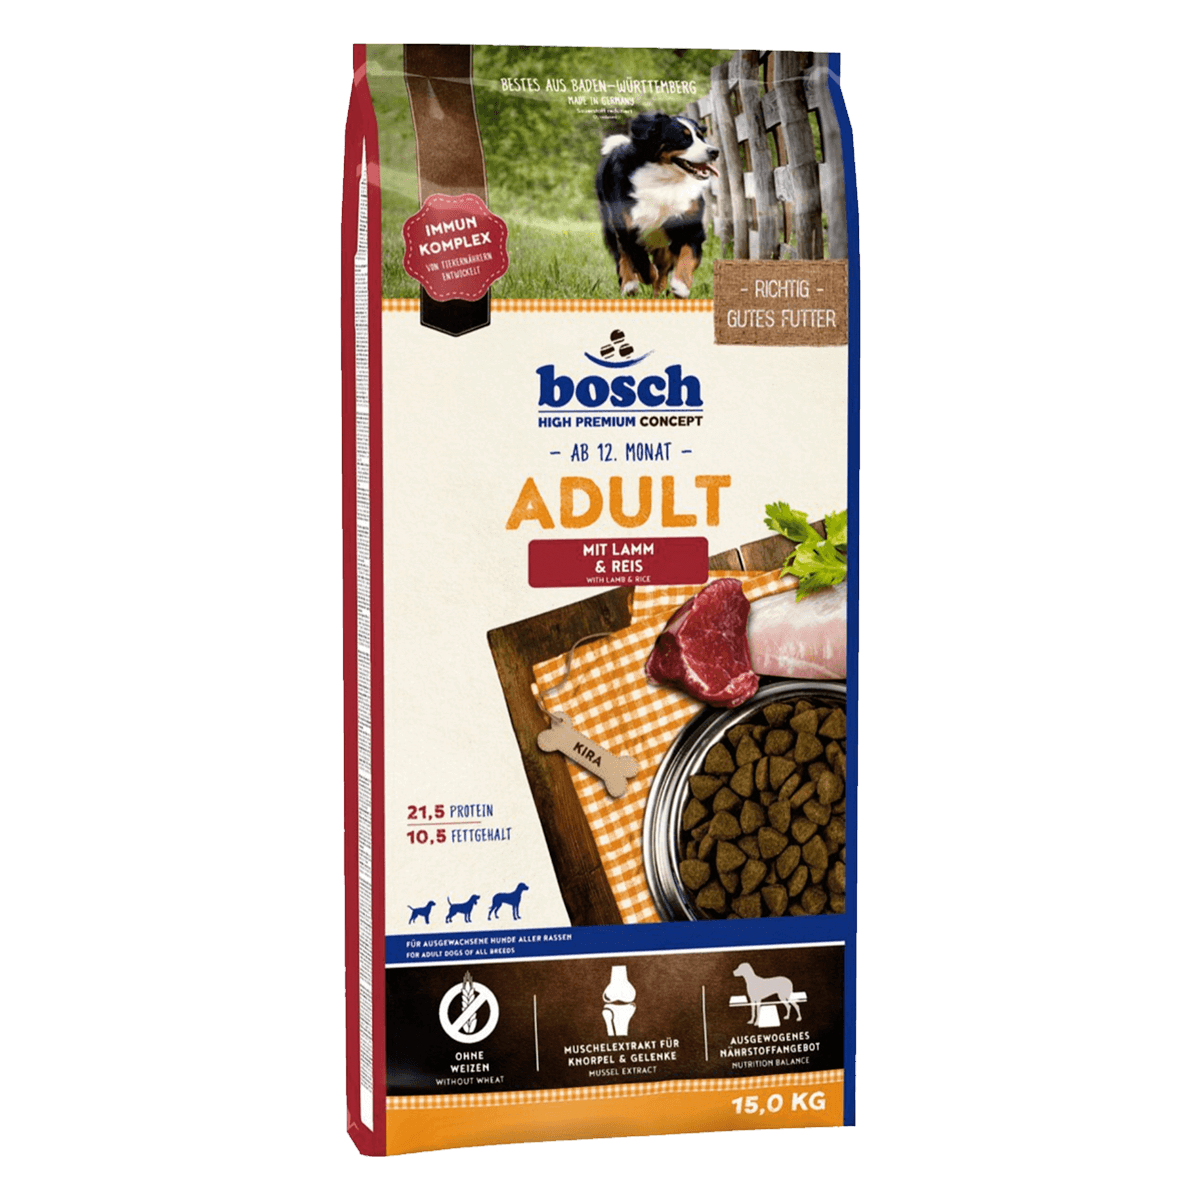 Bosch Adult Lamb and Rice 15 кг cухой корм Бош для взрослых собак